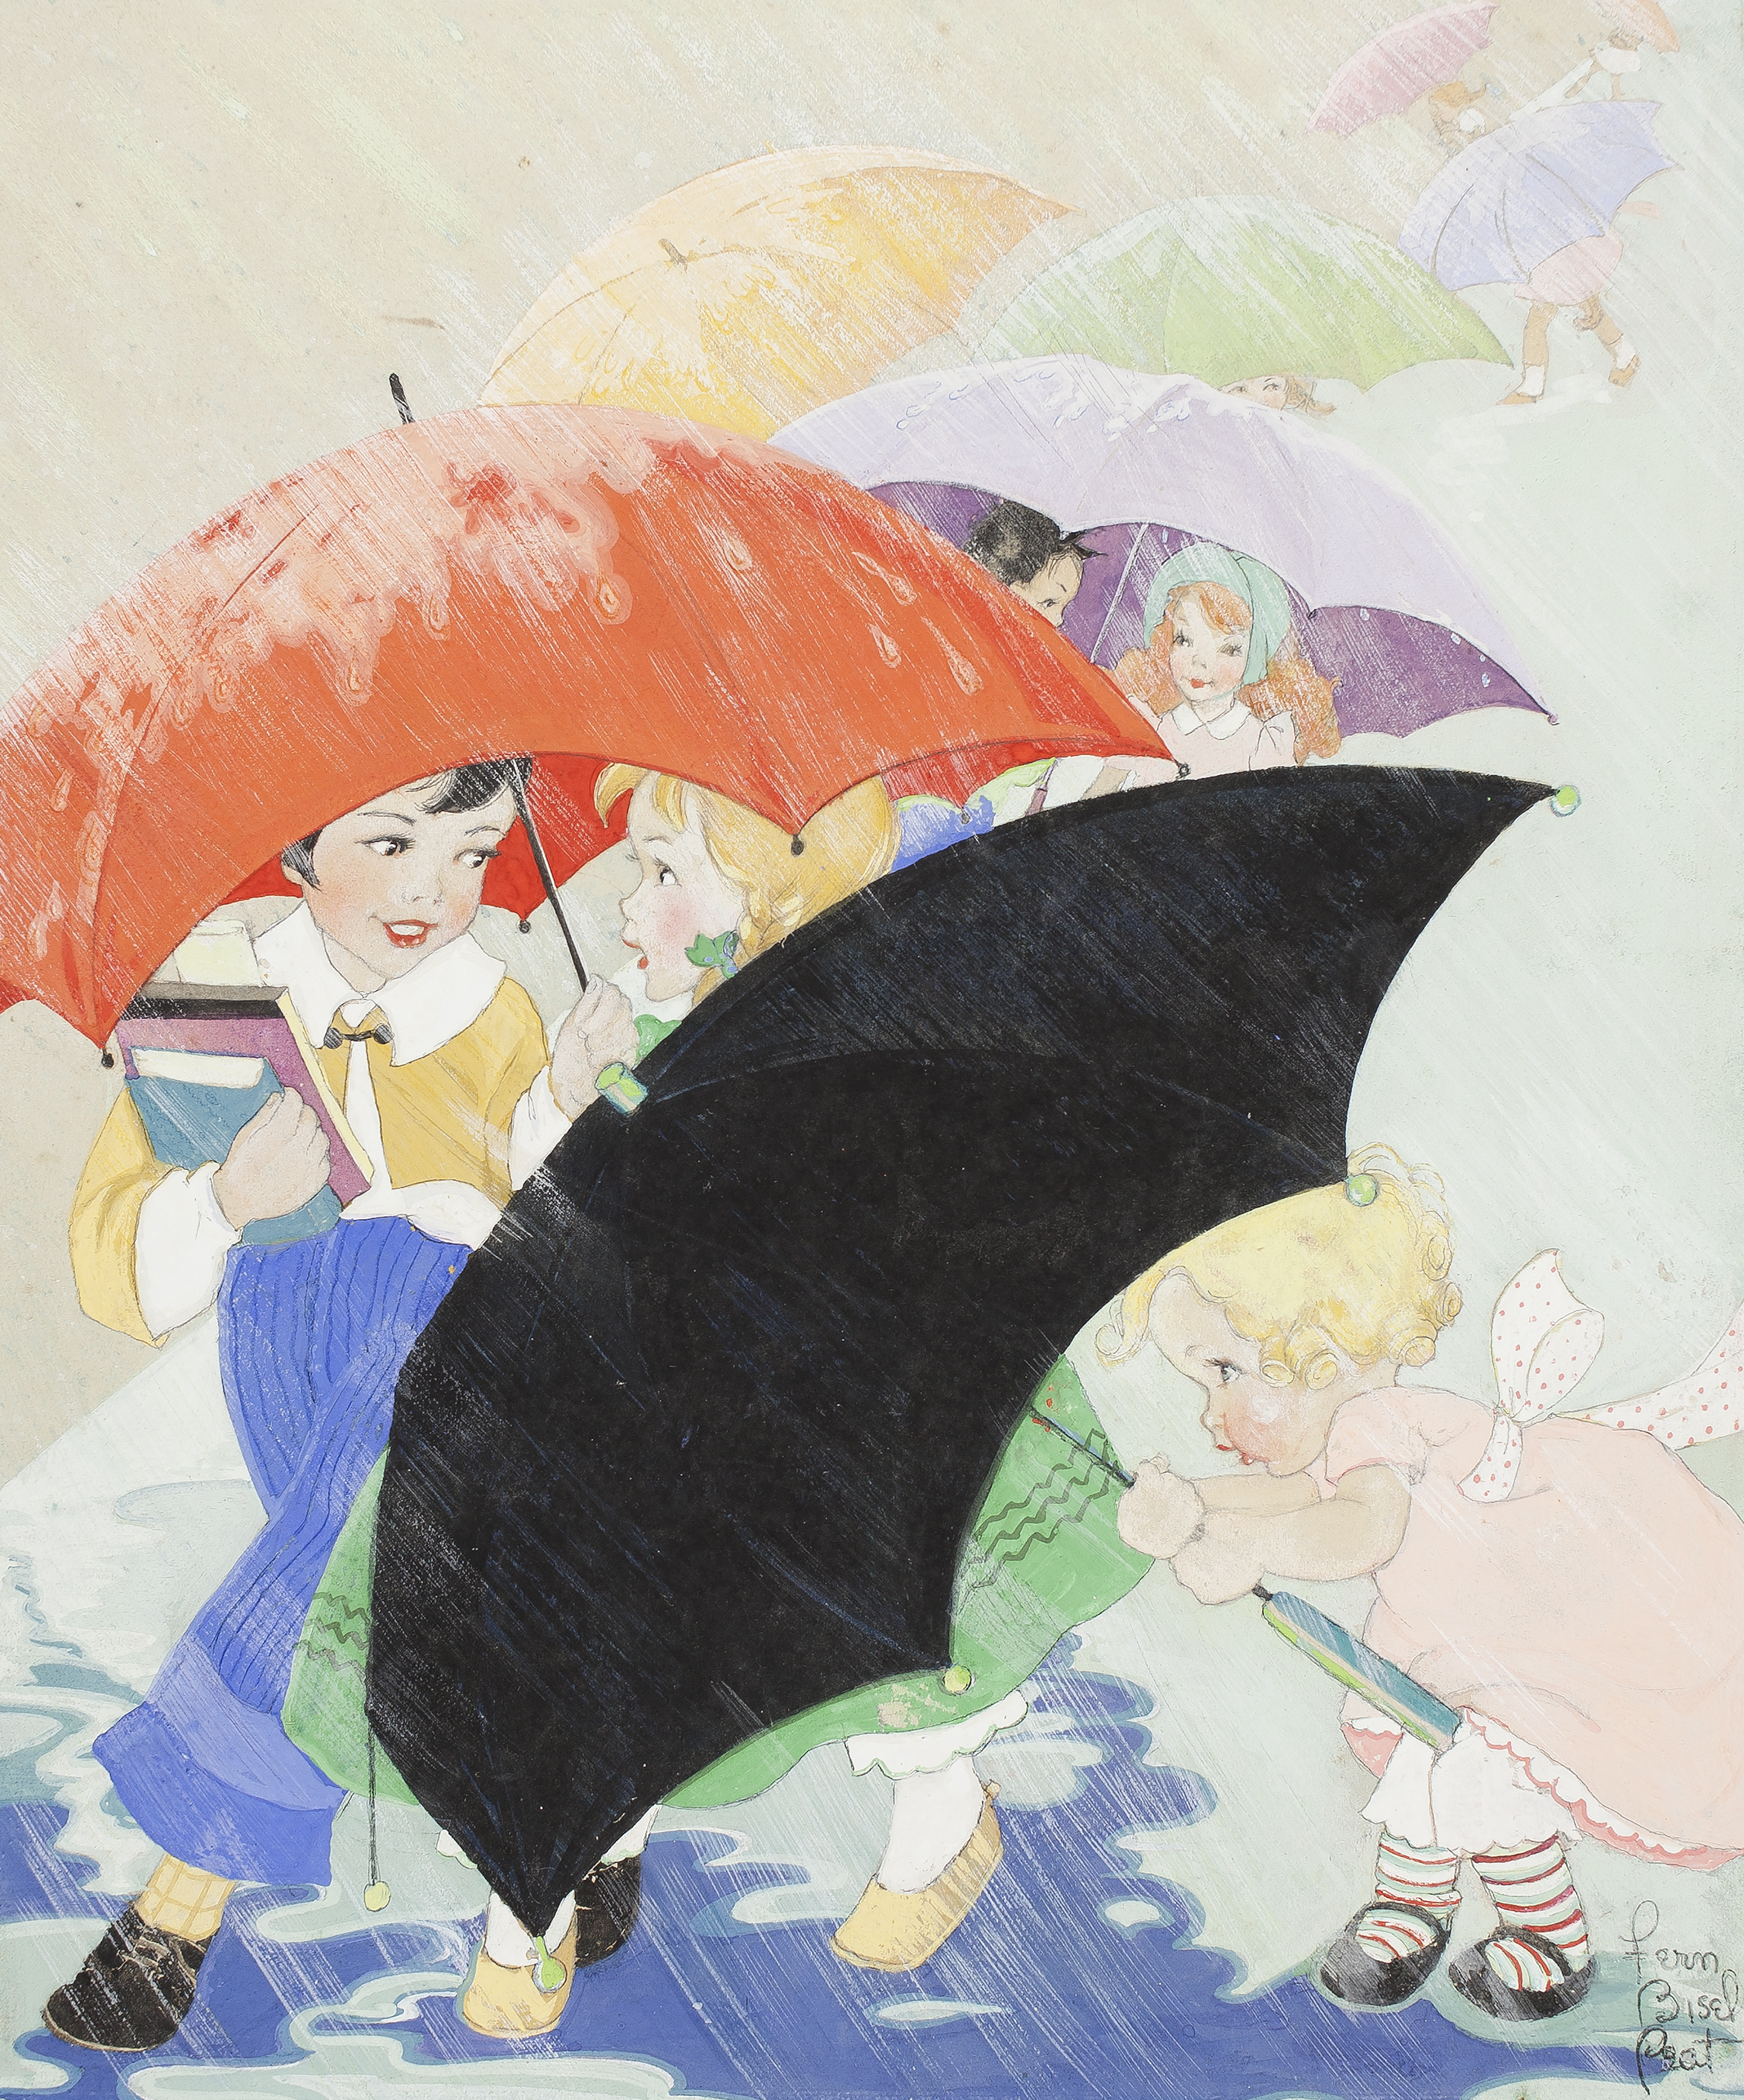 Illustration of girls hiding under umbrellas in rain storm. 